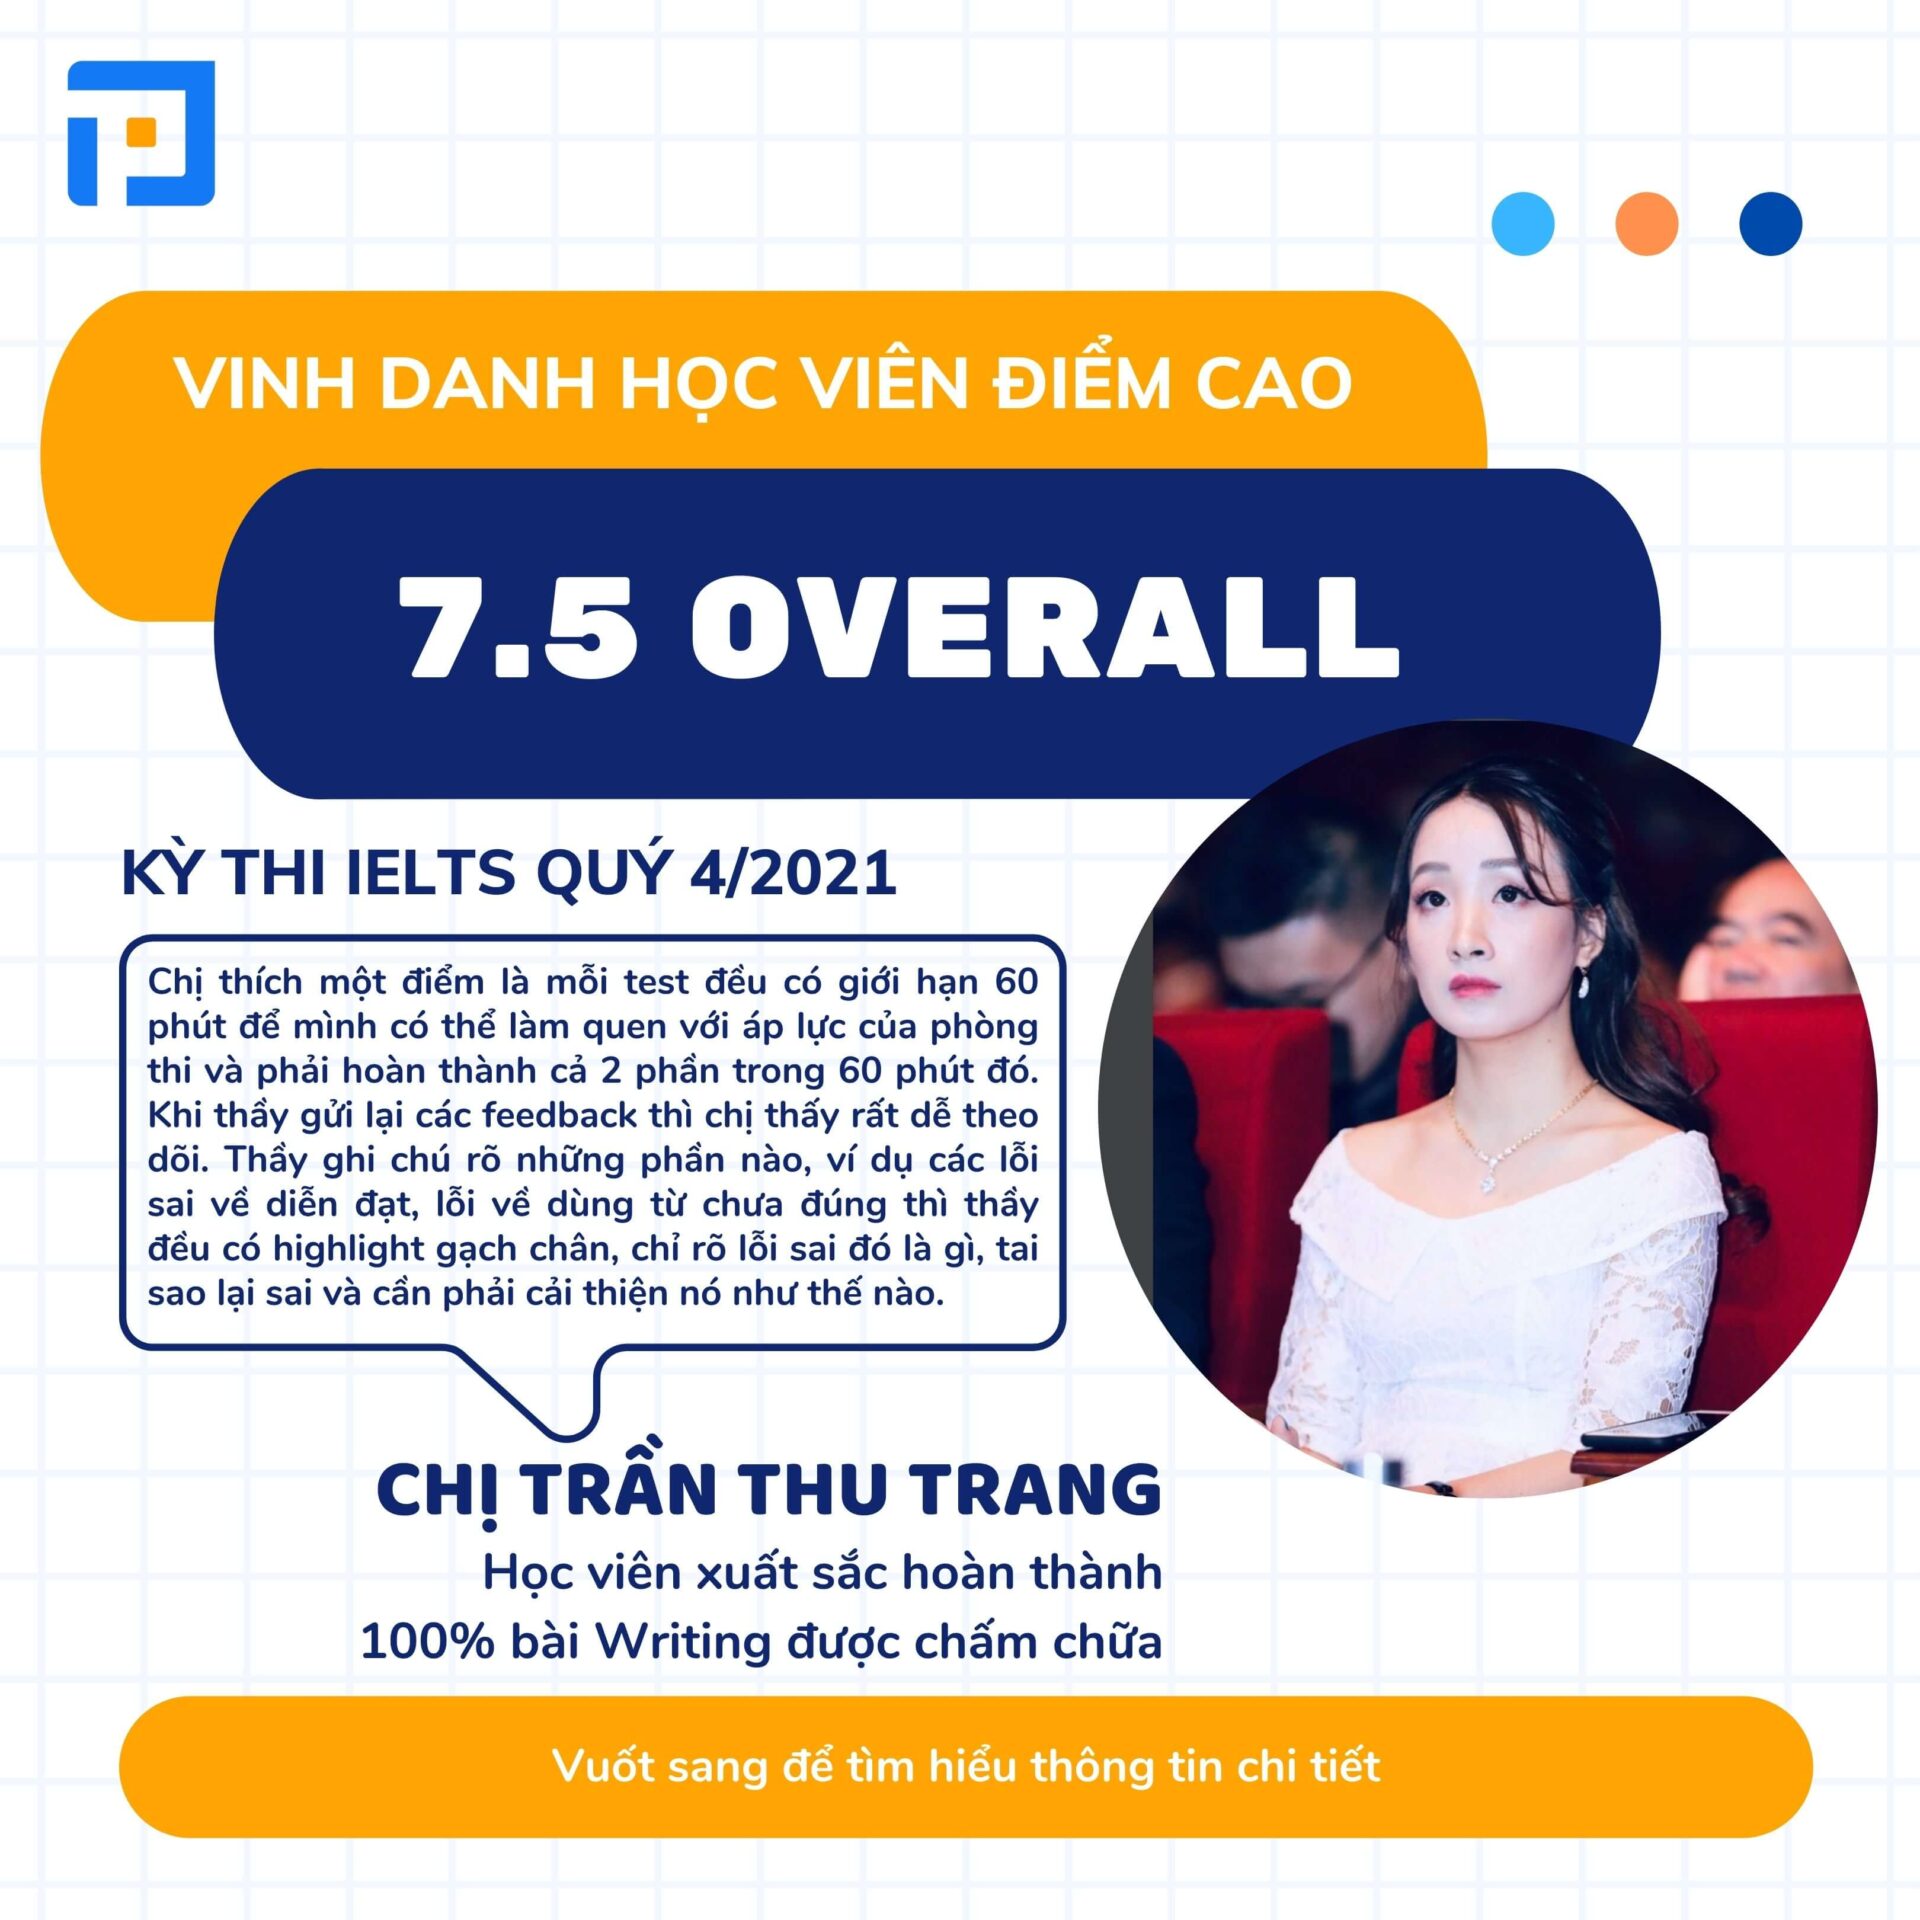 Trần Thu Trang, học viên chinh phục điểm số 7.5 Overall nhờ hoàn thành 100% bài chấm chữa Writing tại PREP